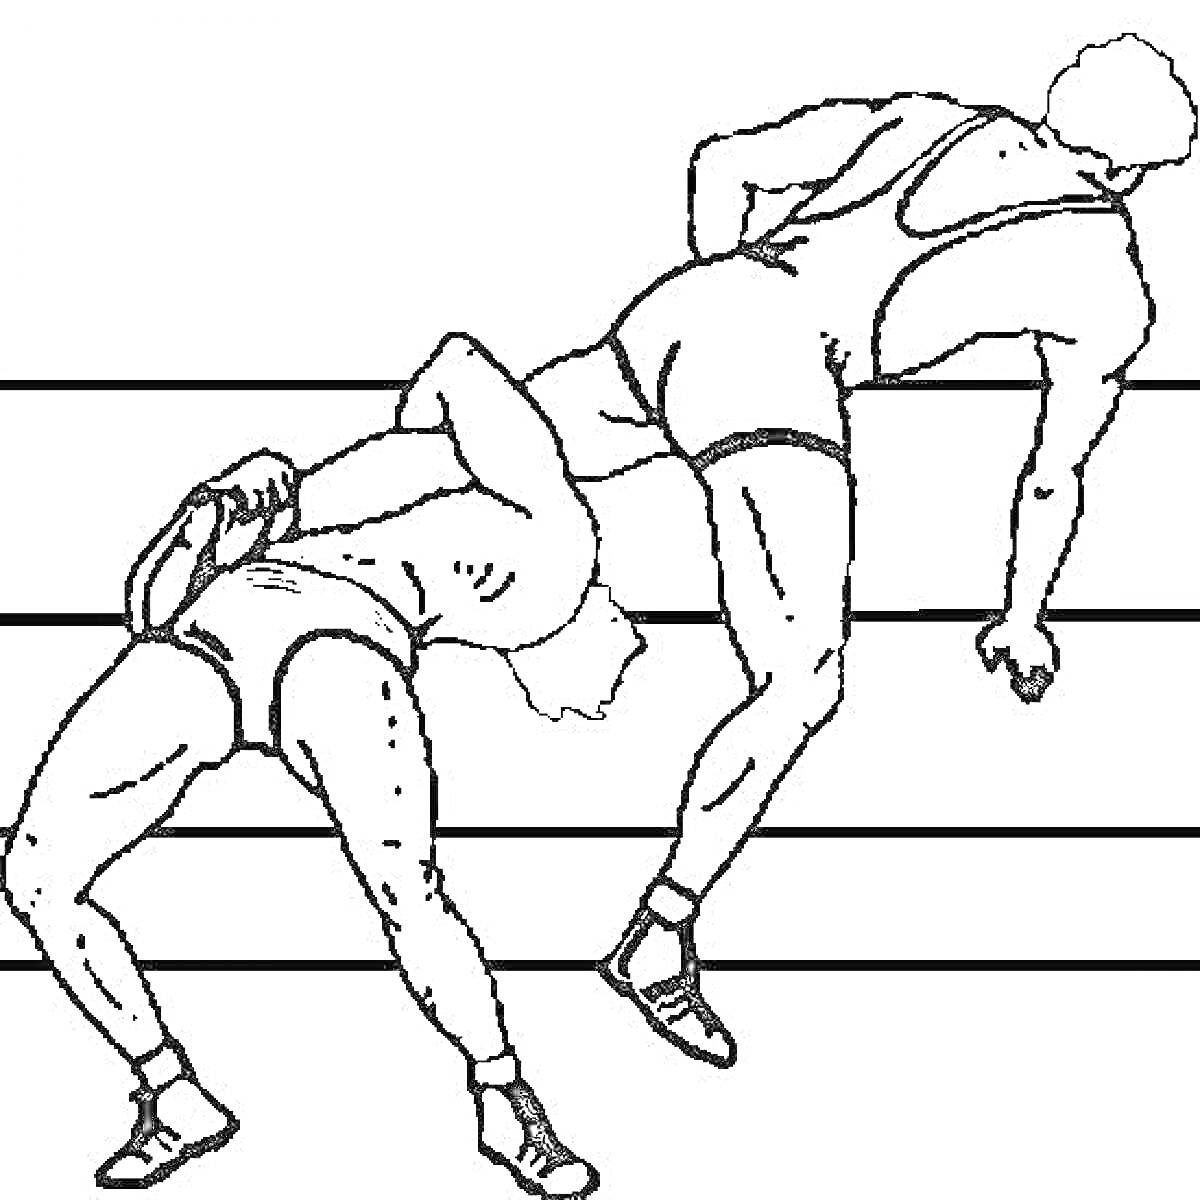 Борцы на ринге, один наклонившийся через канаты, другой пытается его поднять